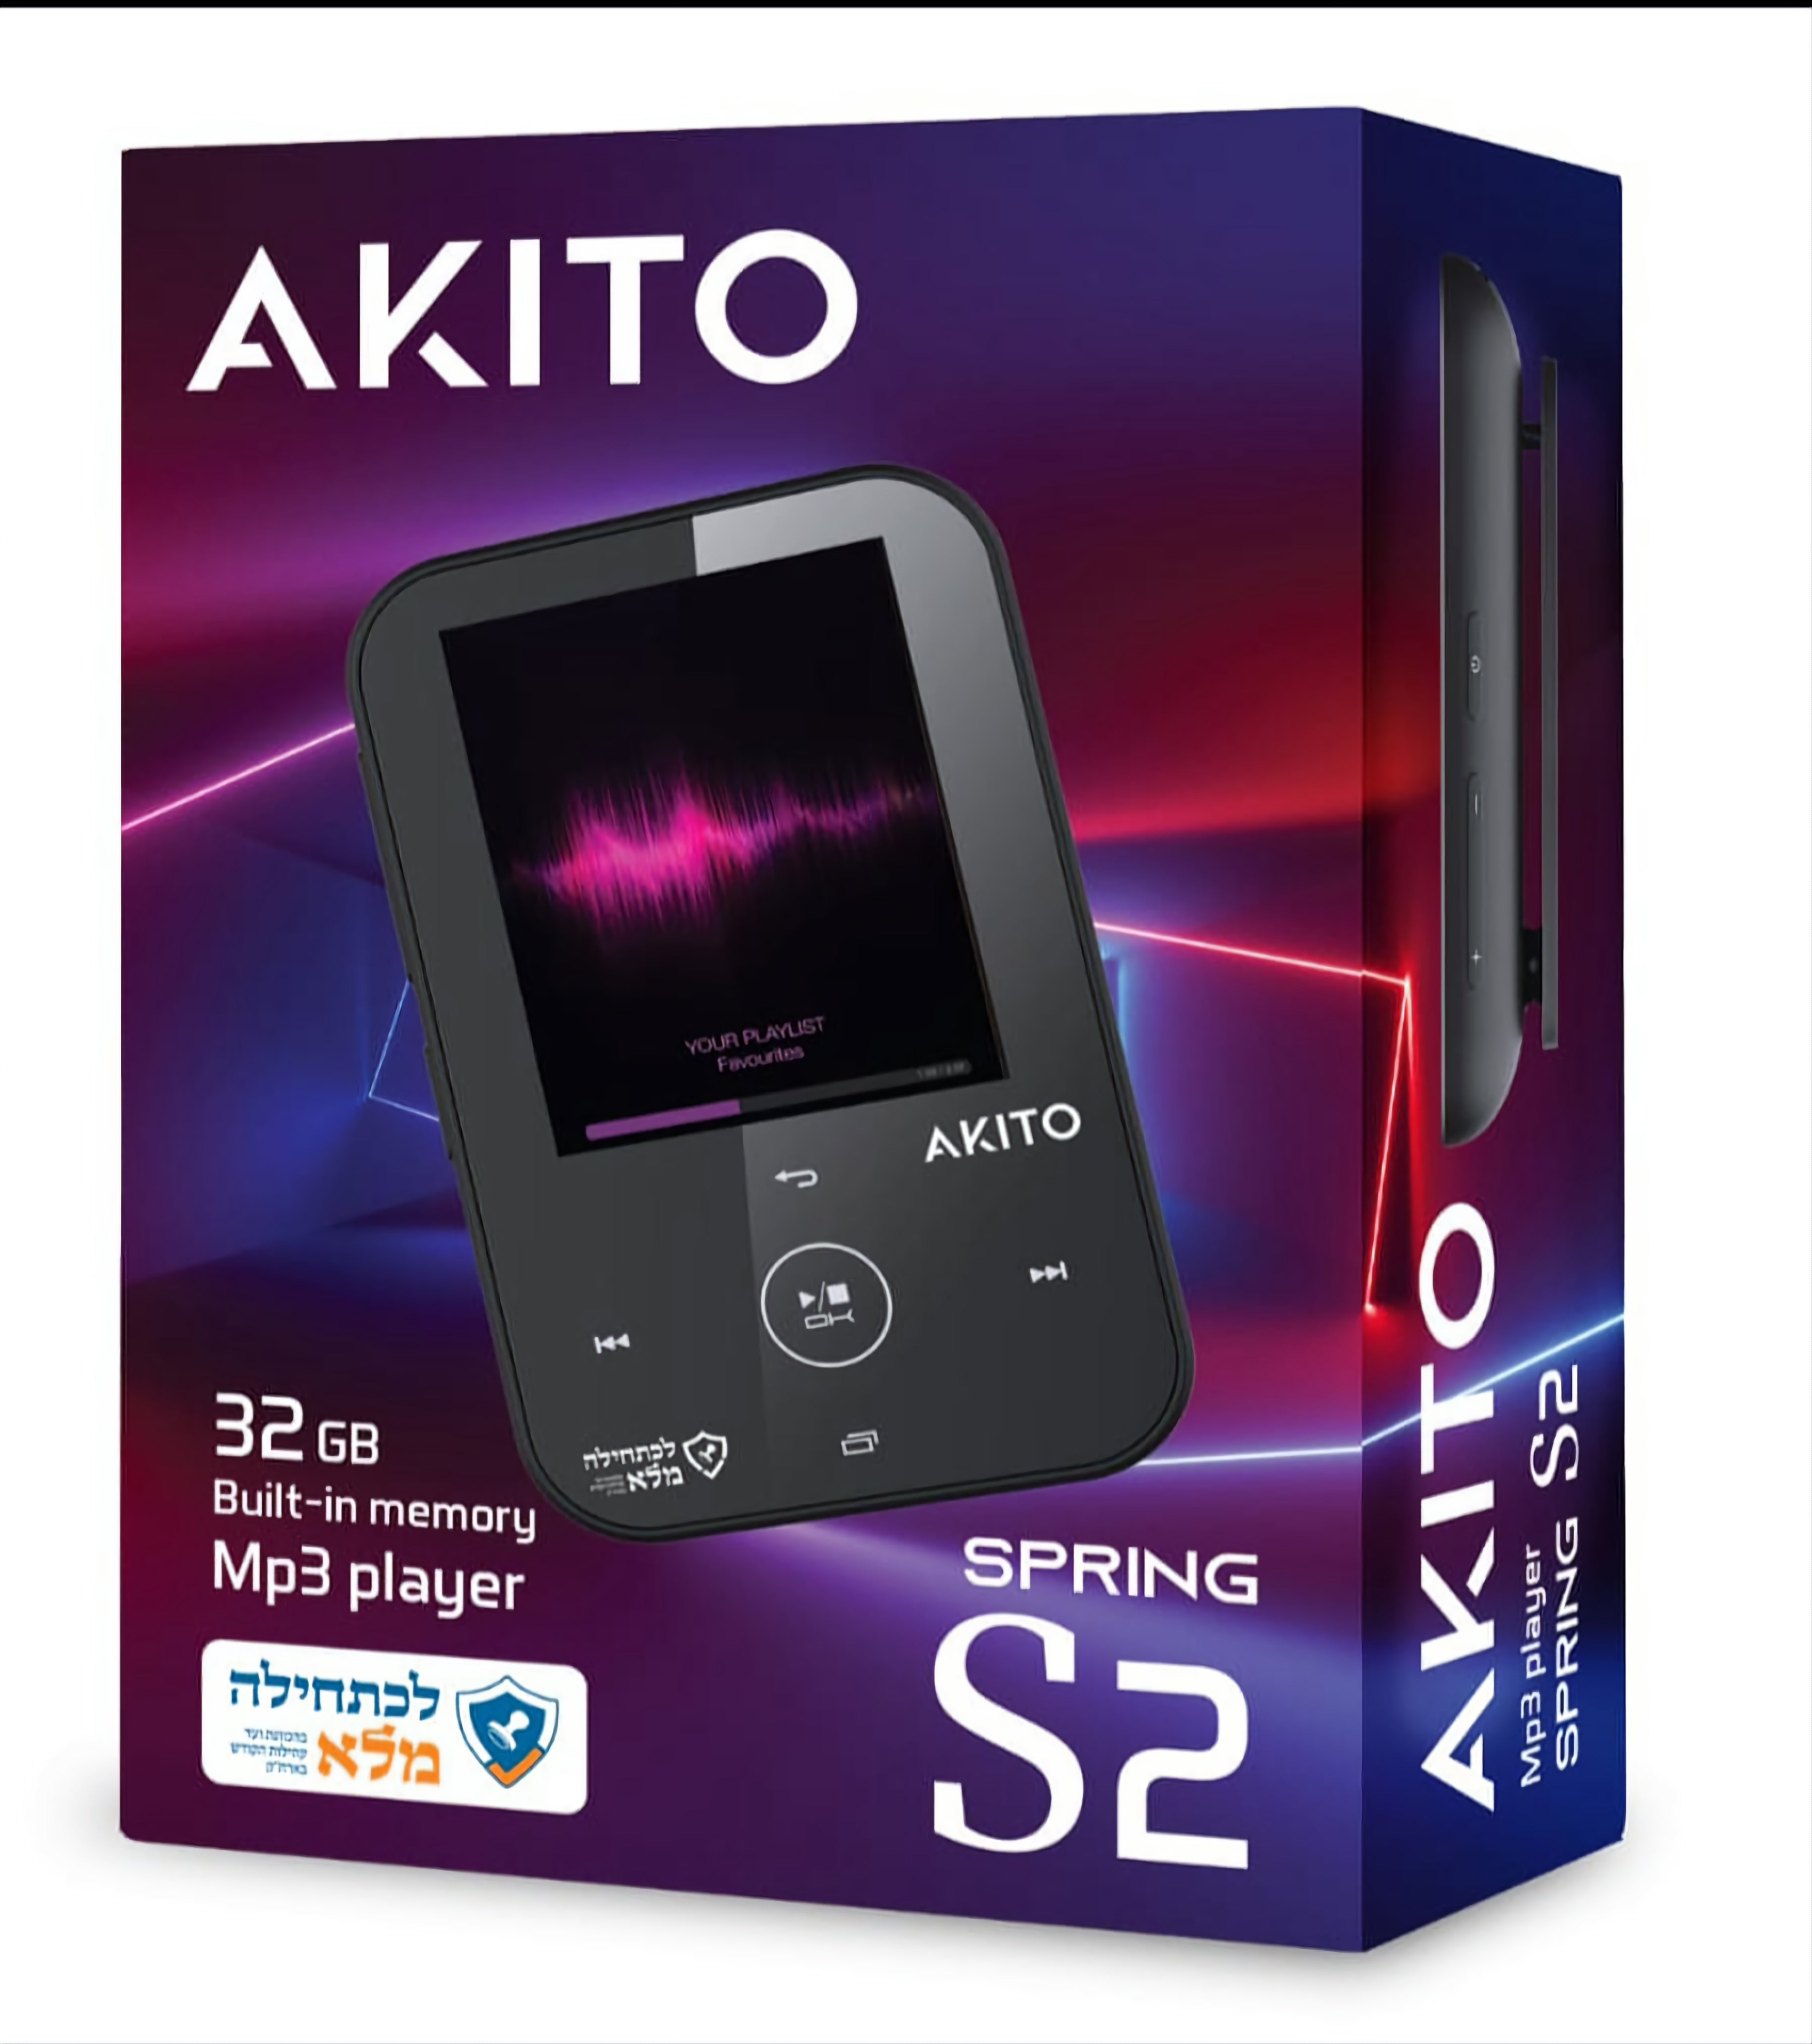 נגן MP3 כשר Akito S2 ללא חריץ Sd - 32GB